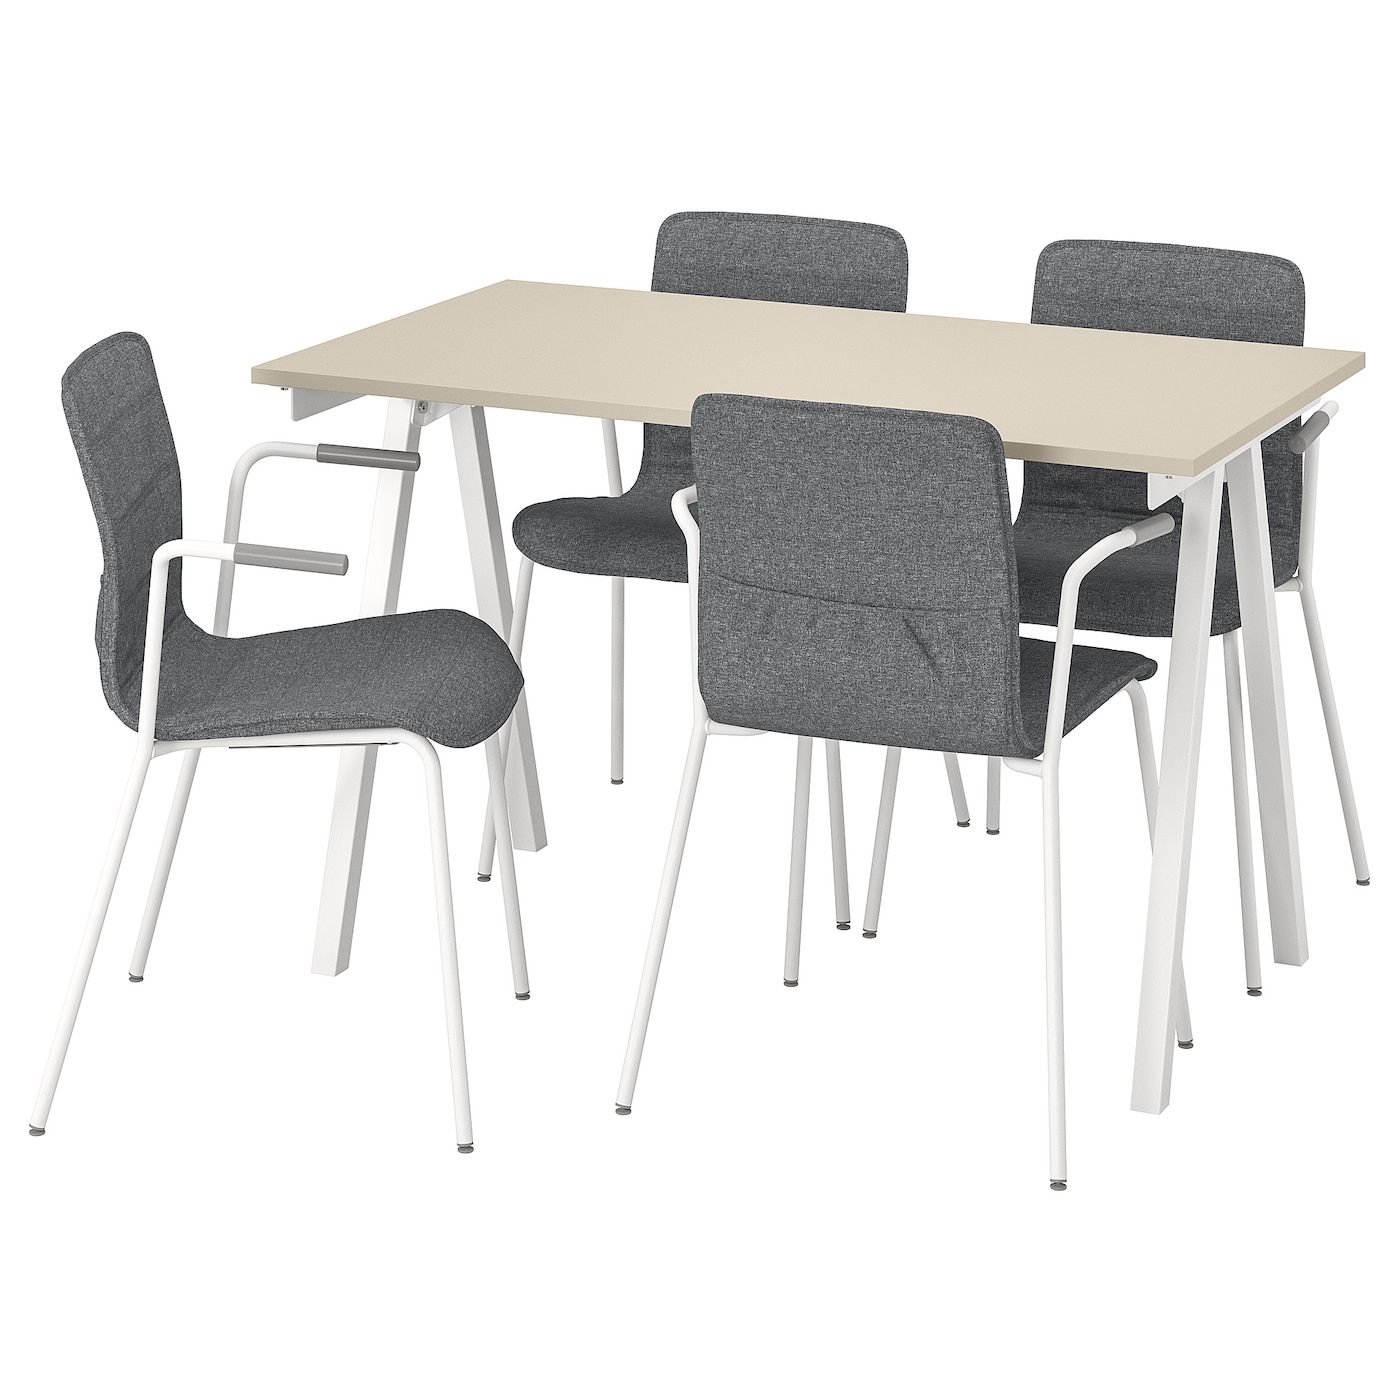 Комбинация: стол, 4 стула - IKEA TROTTEN/LÄKTARE/LAKTARE, 120х70 см, белый/бежевый/серый, ТРОТТЕН/ЛЭКТАРЕ ИКЕА